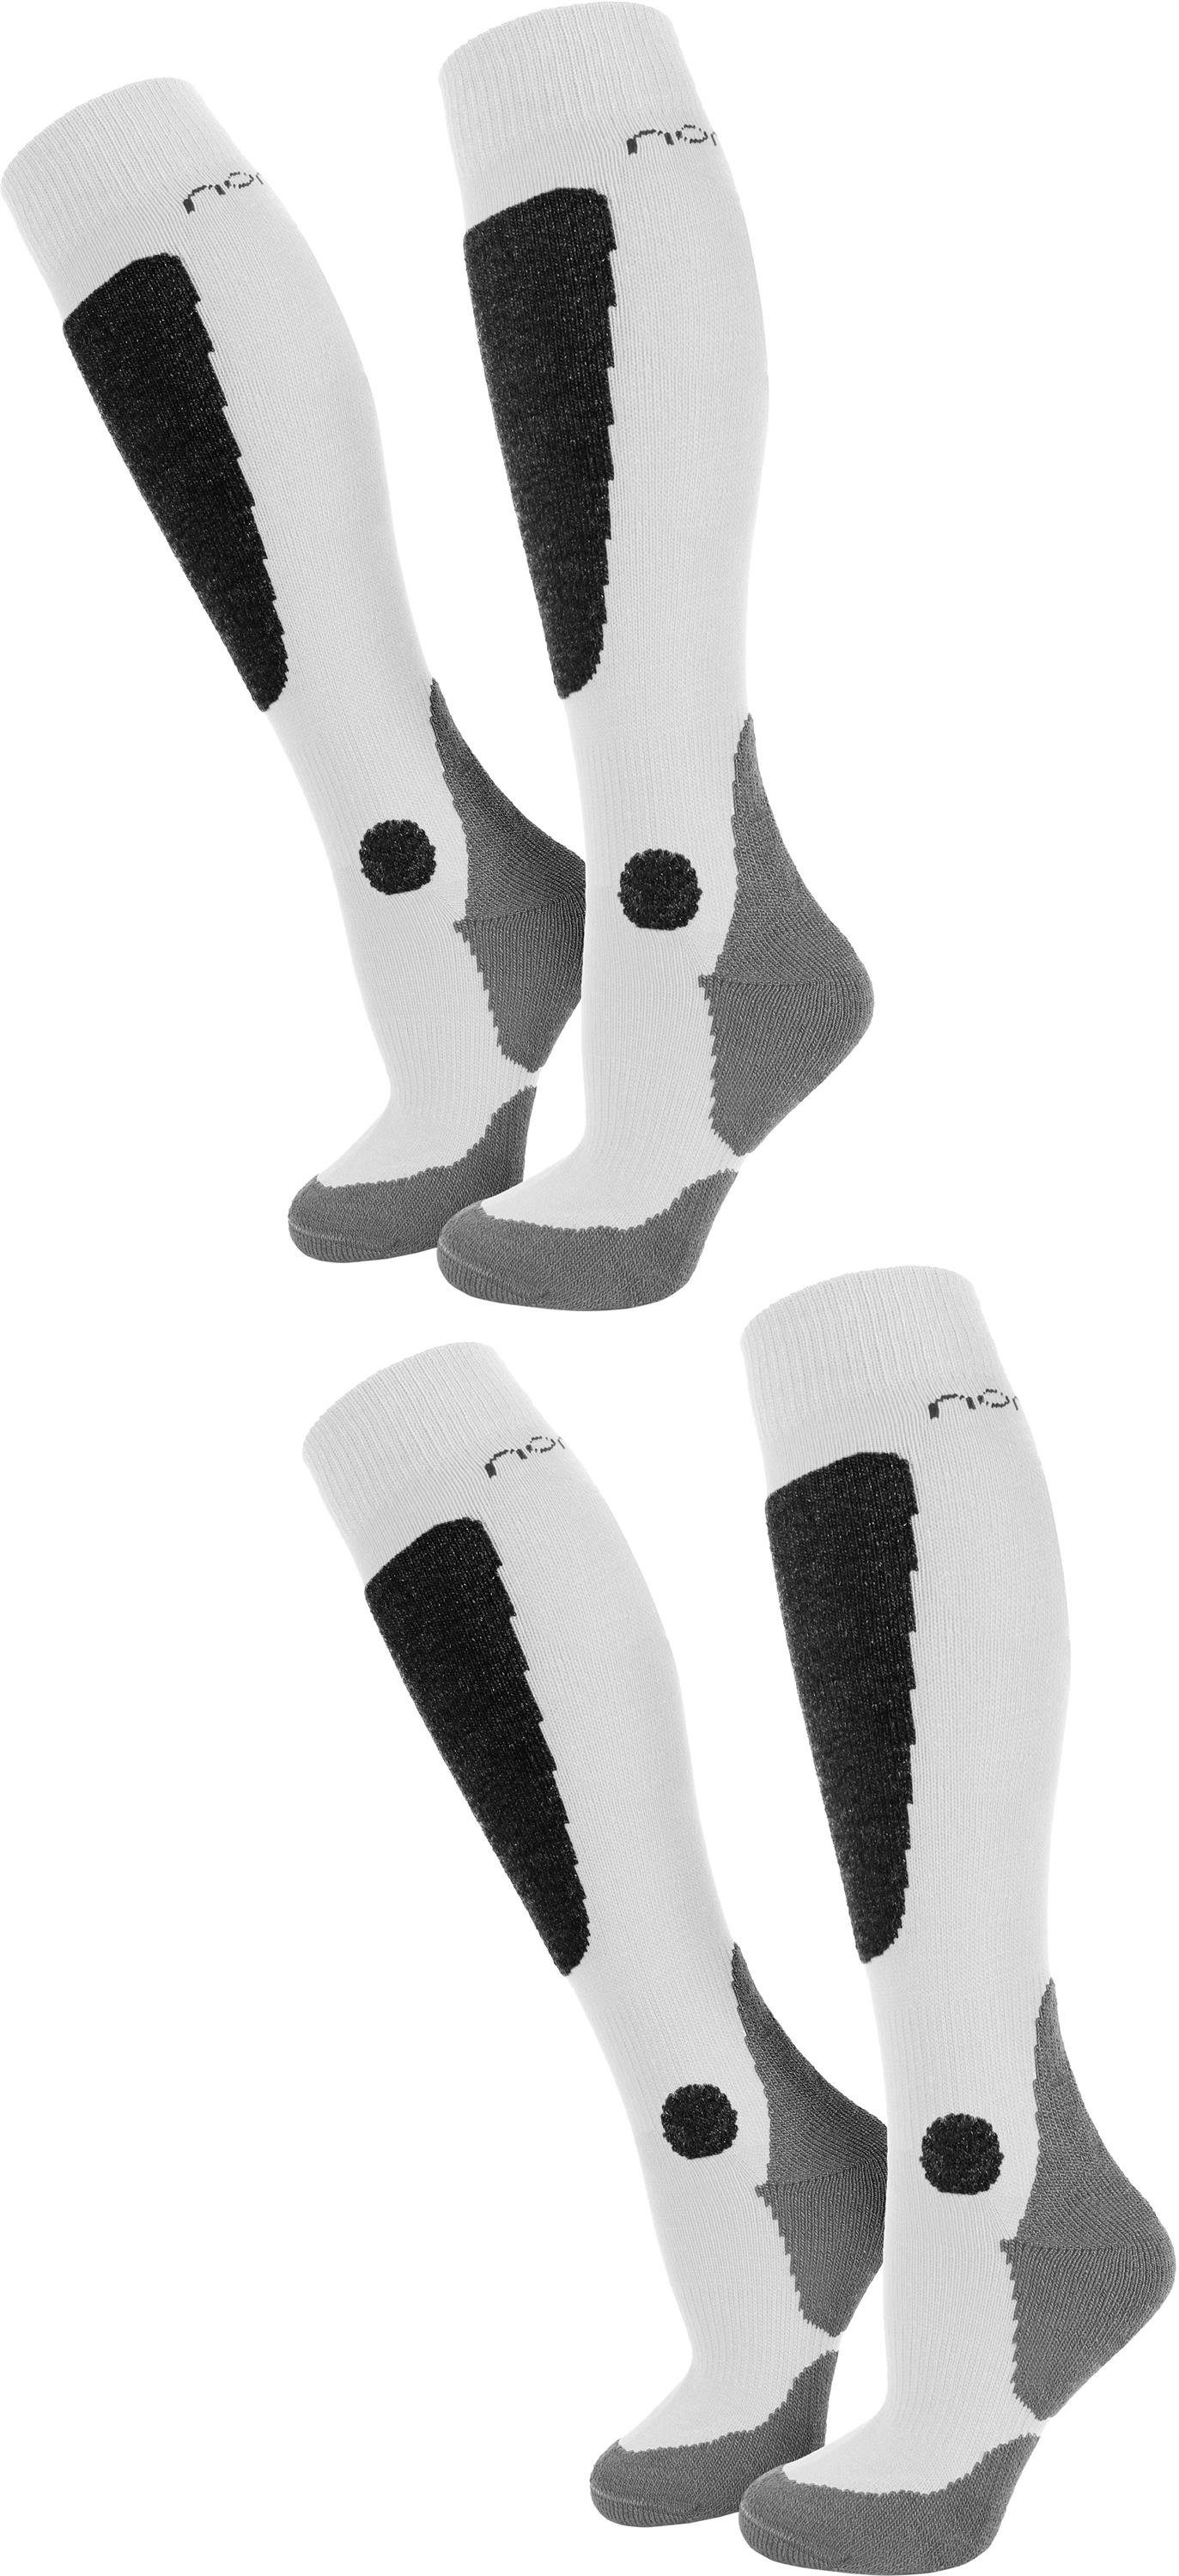 normani Skisocken 2 Paar Ski-Kniestrümpfe New-Style (2 Paar) mit Schurwolle Weiß/Schwarz/Grau